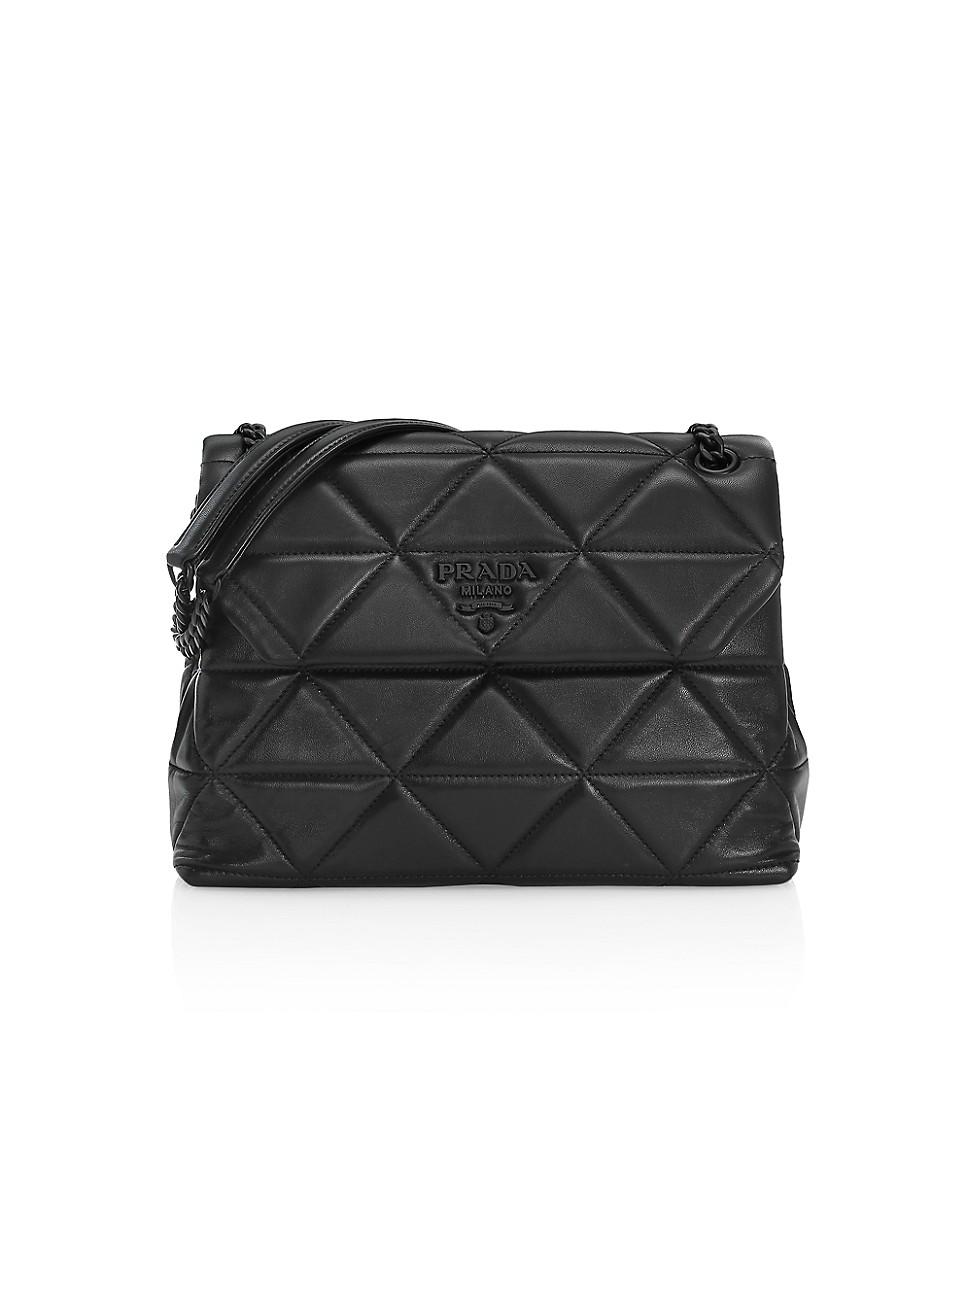 Prada Medium Spectrum Quilted Leather Shoulder Bag in Black